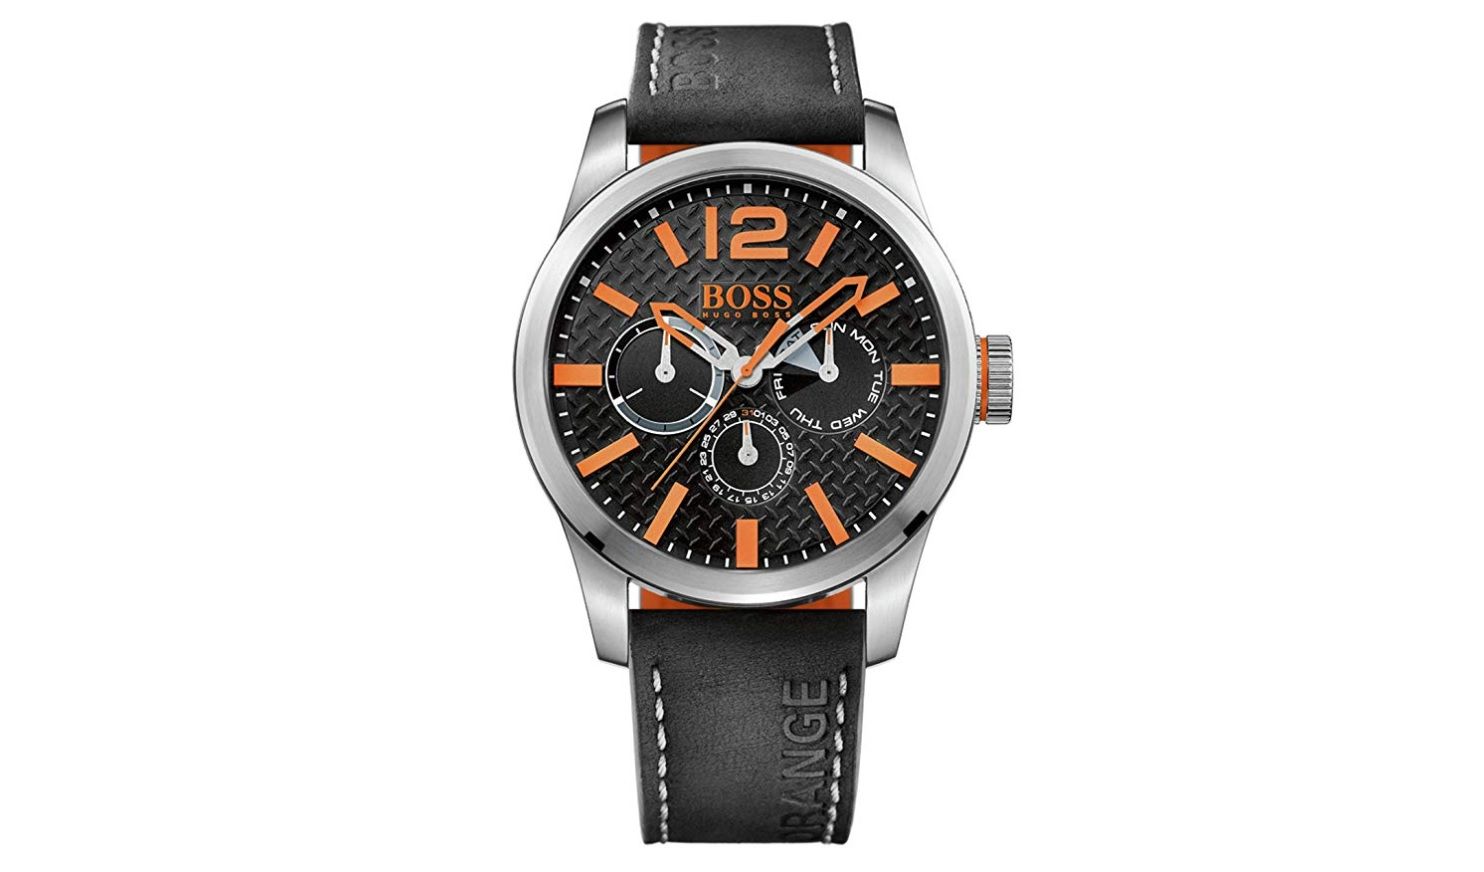 ¡Oferta del día! Reloj Hugo Boss 1513228 por sólo 75,05€ (antes 165€)